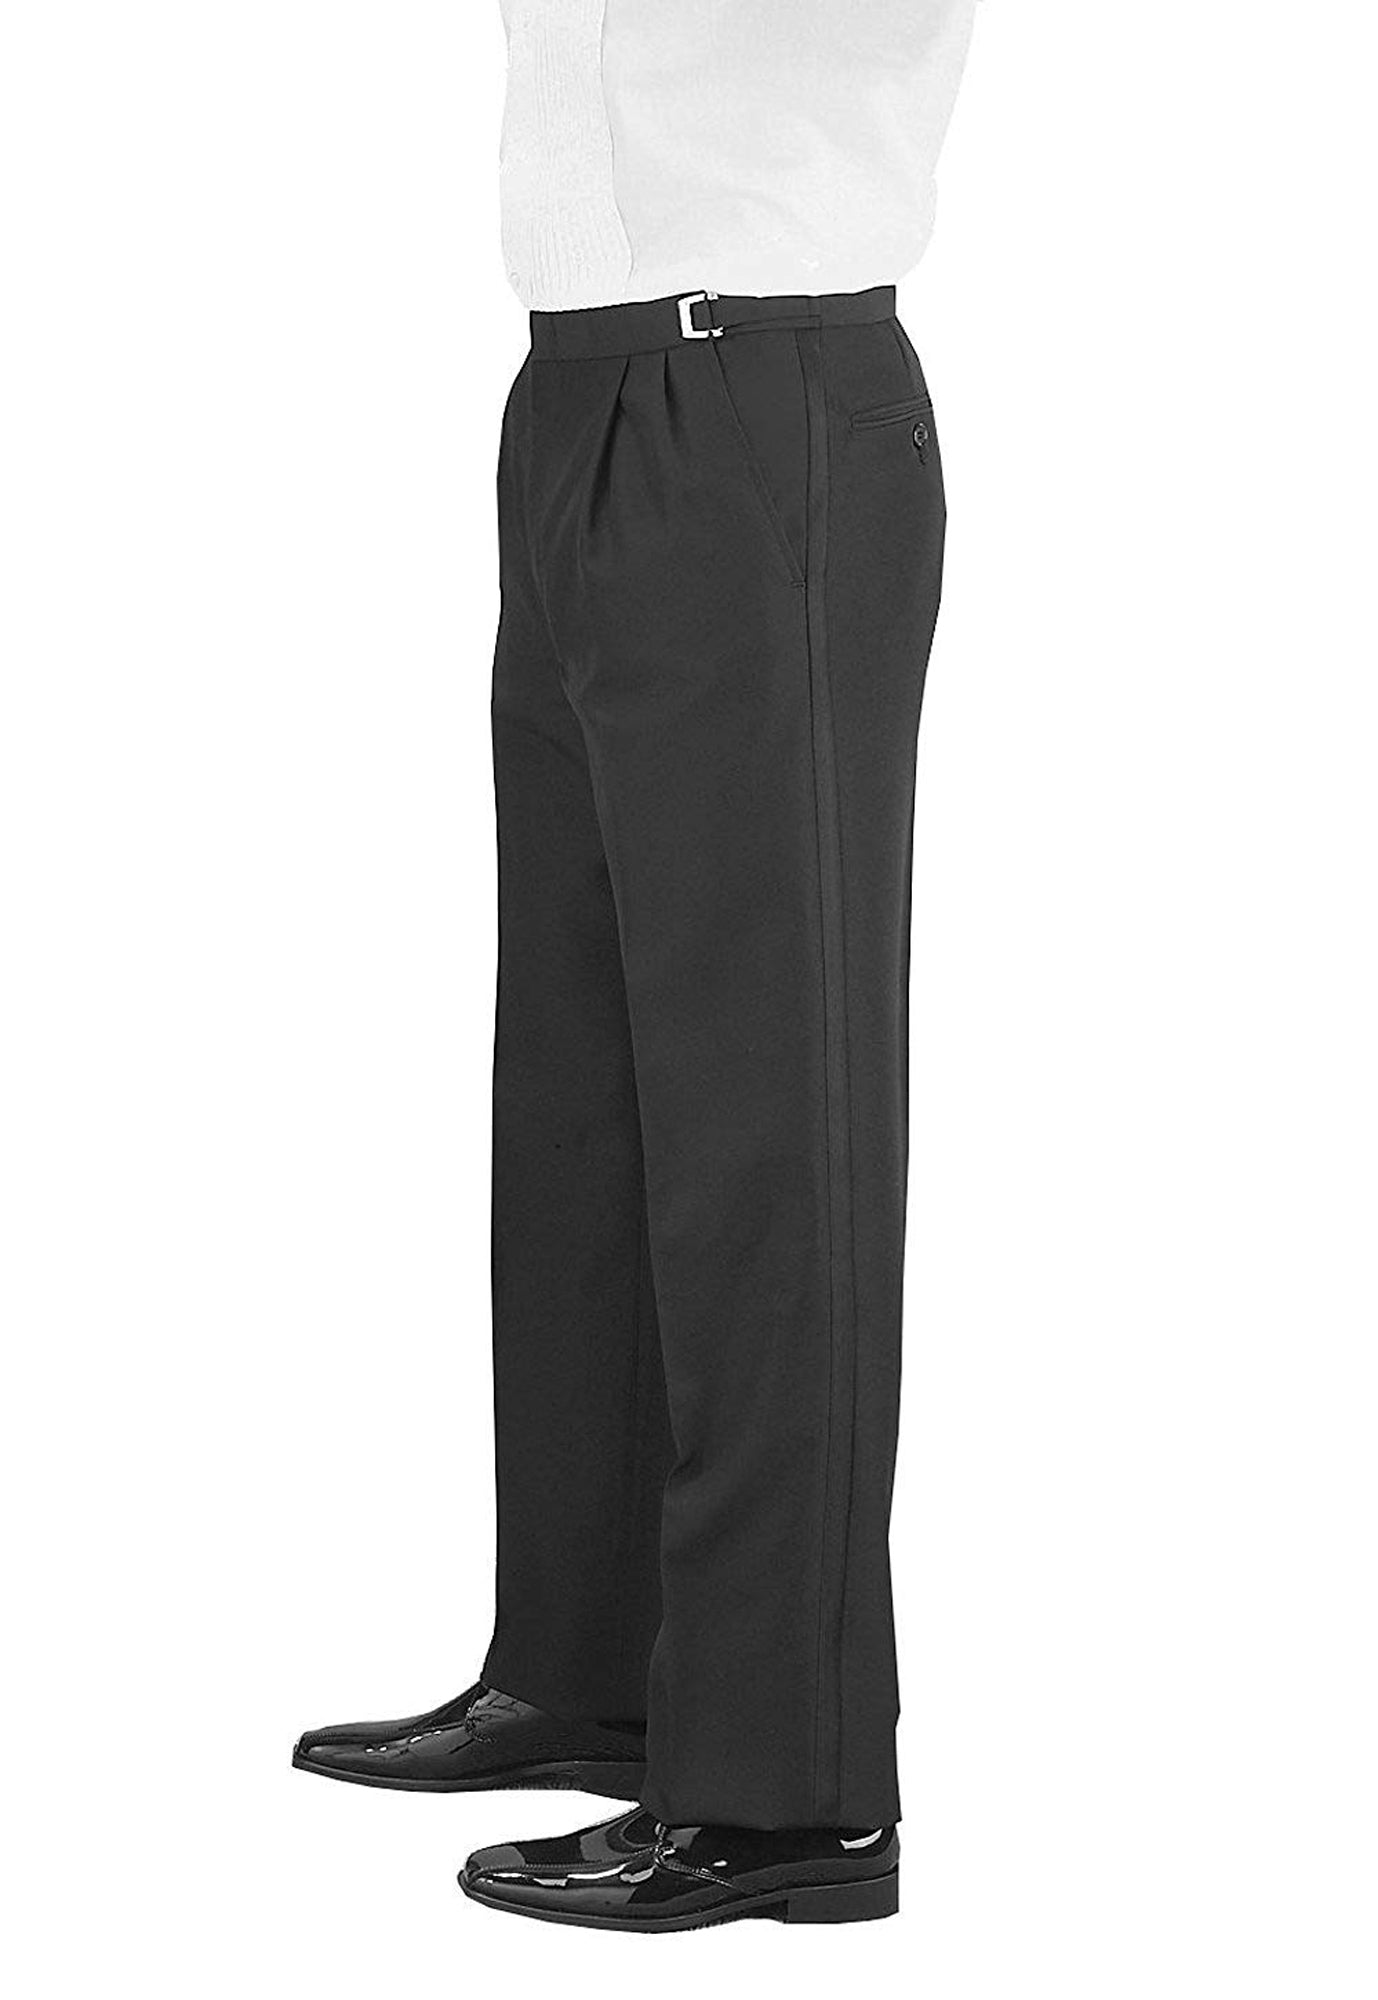 Men's Wool Traditional Black Tuxedo Pants Wedding 33 34 35 Adjustable Waist